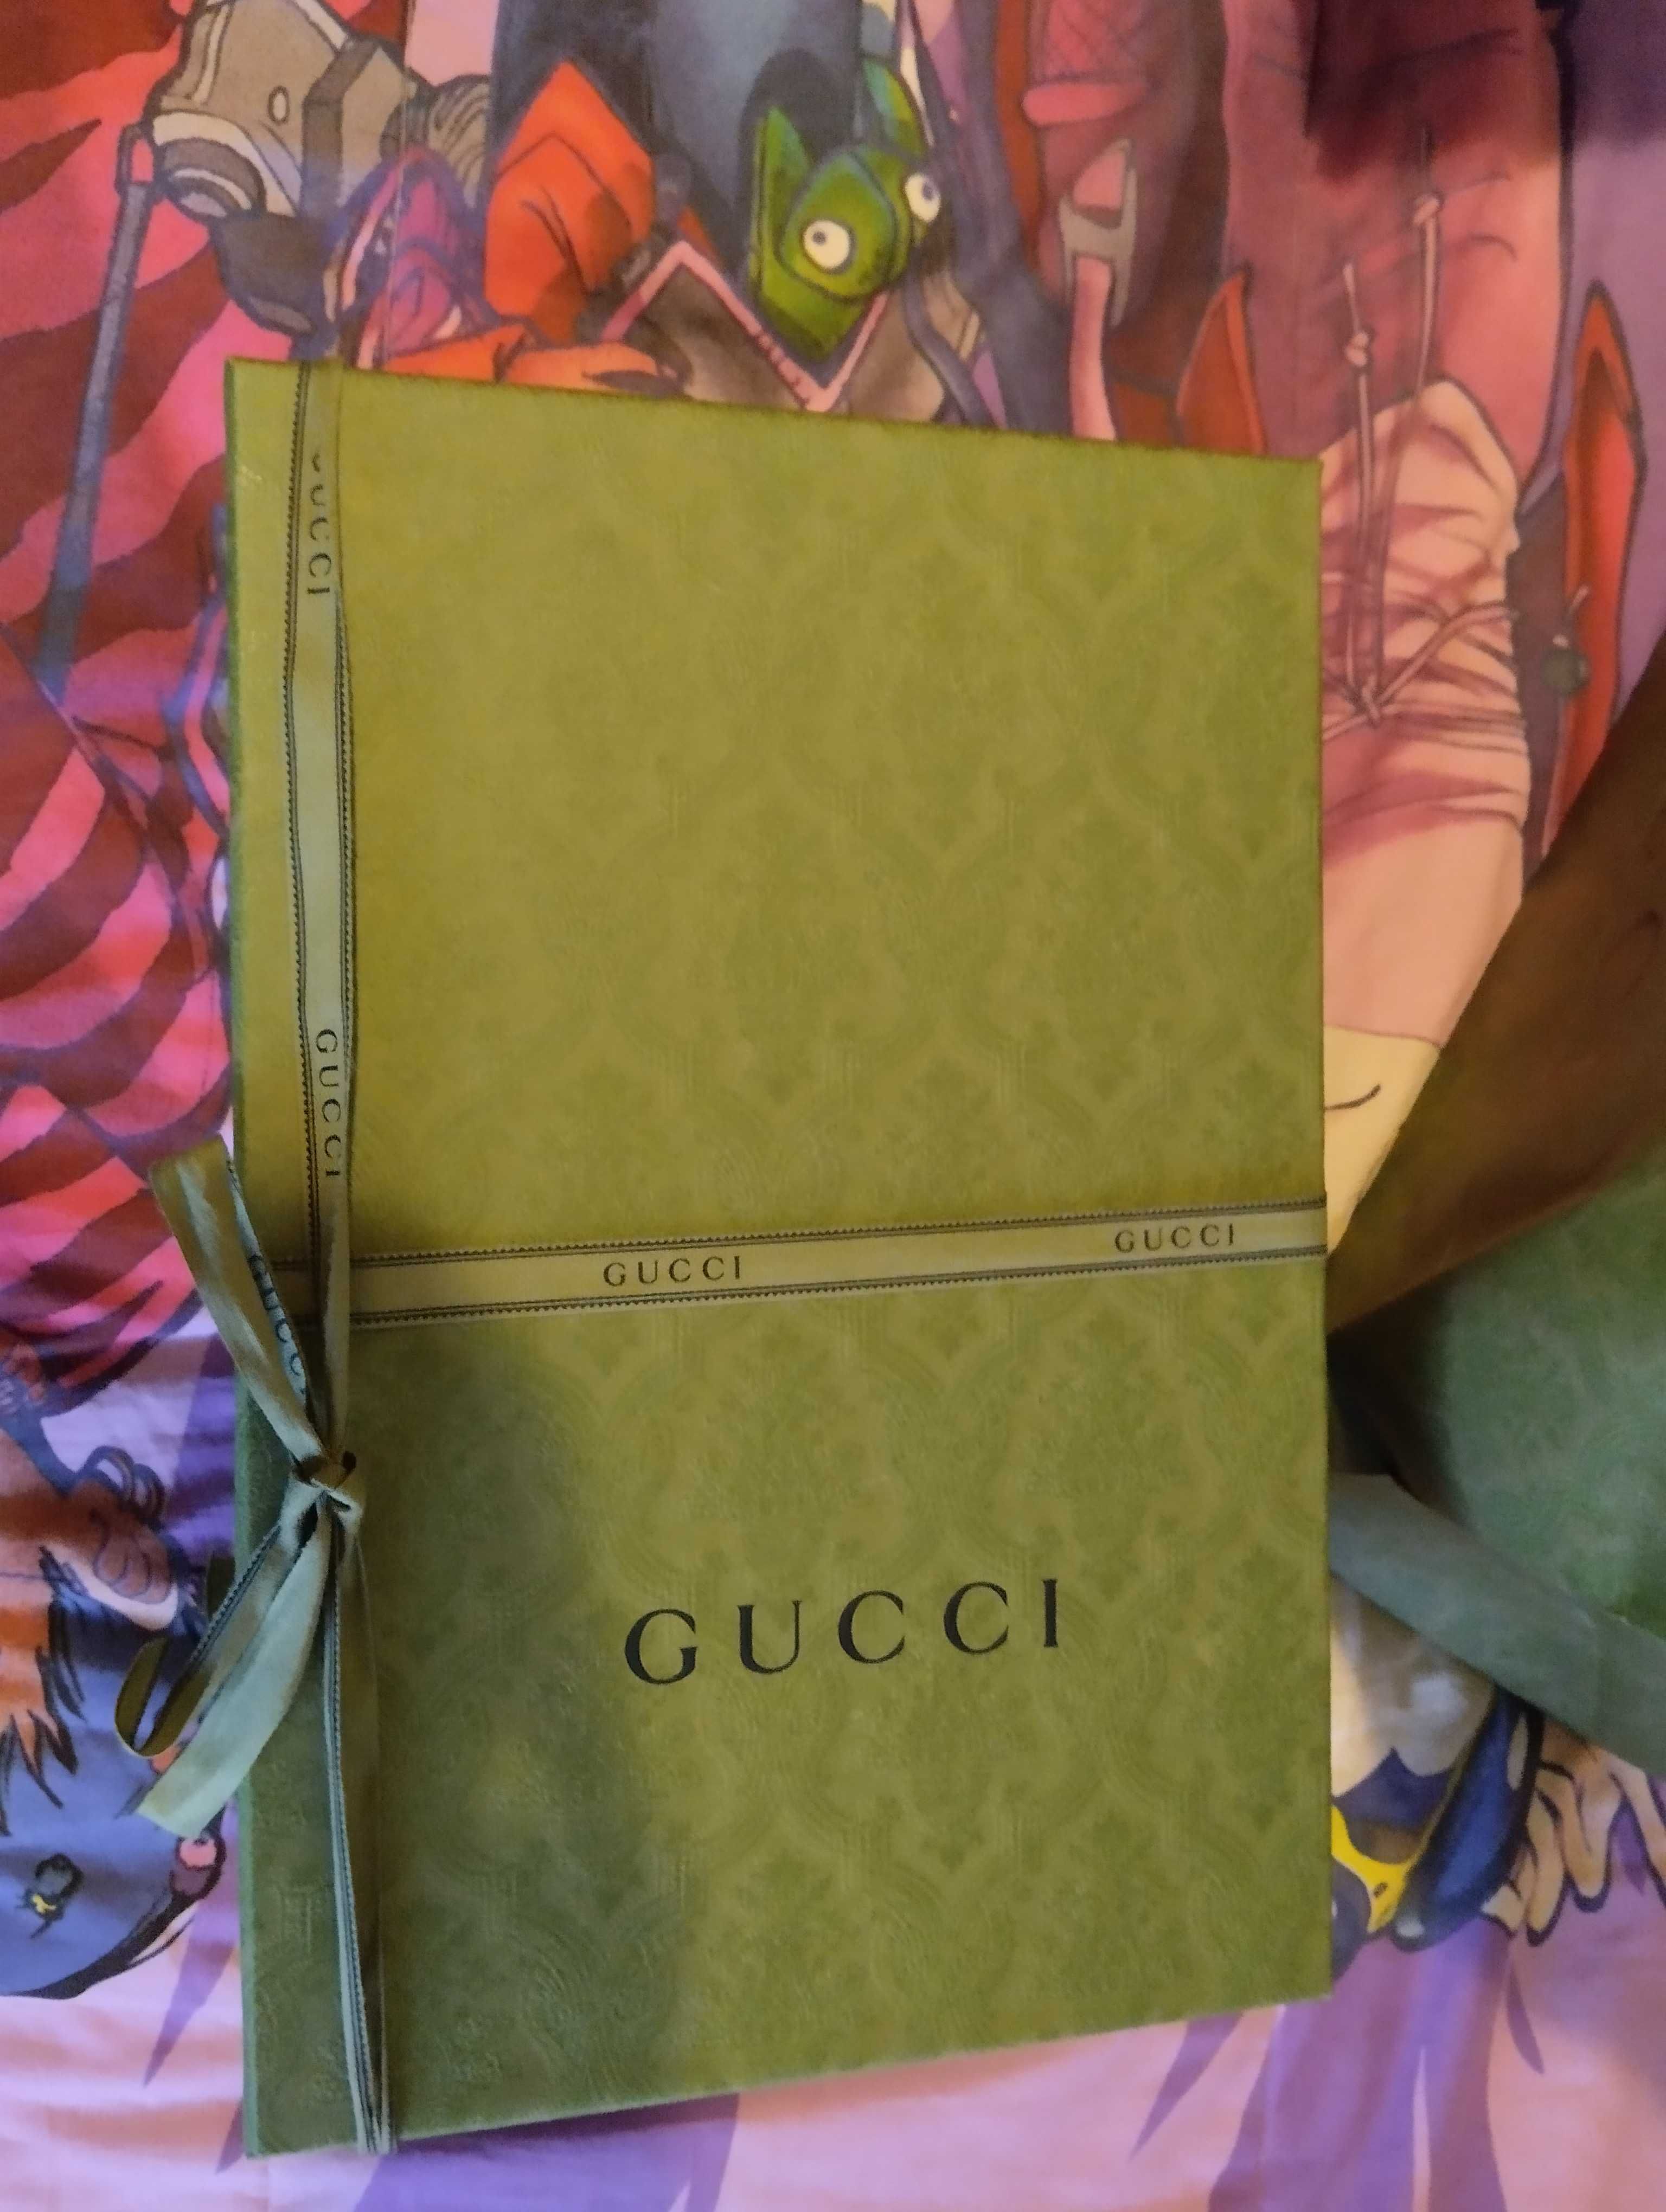 Caixas da Gucci vazias com acabamento de excelência